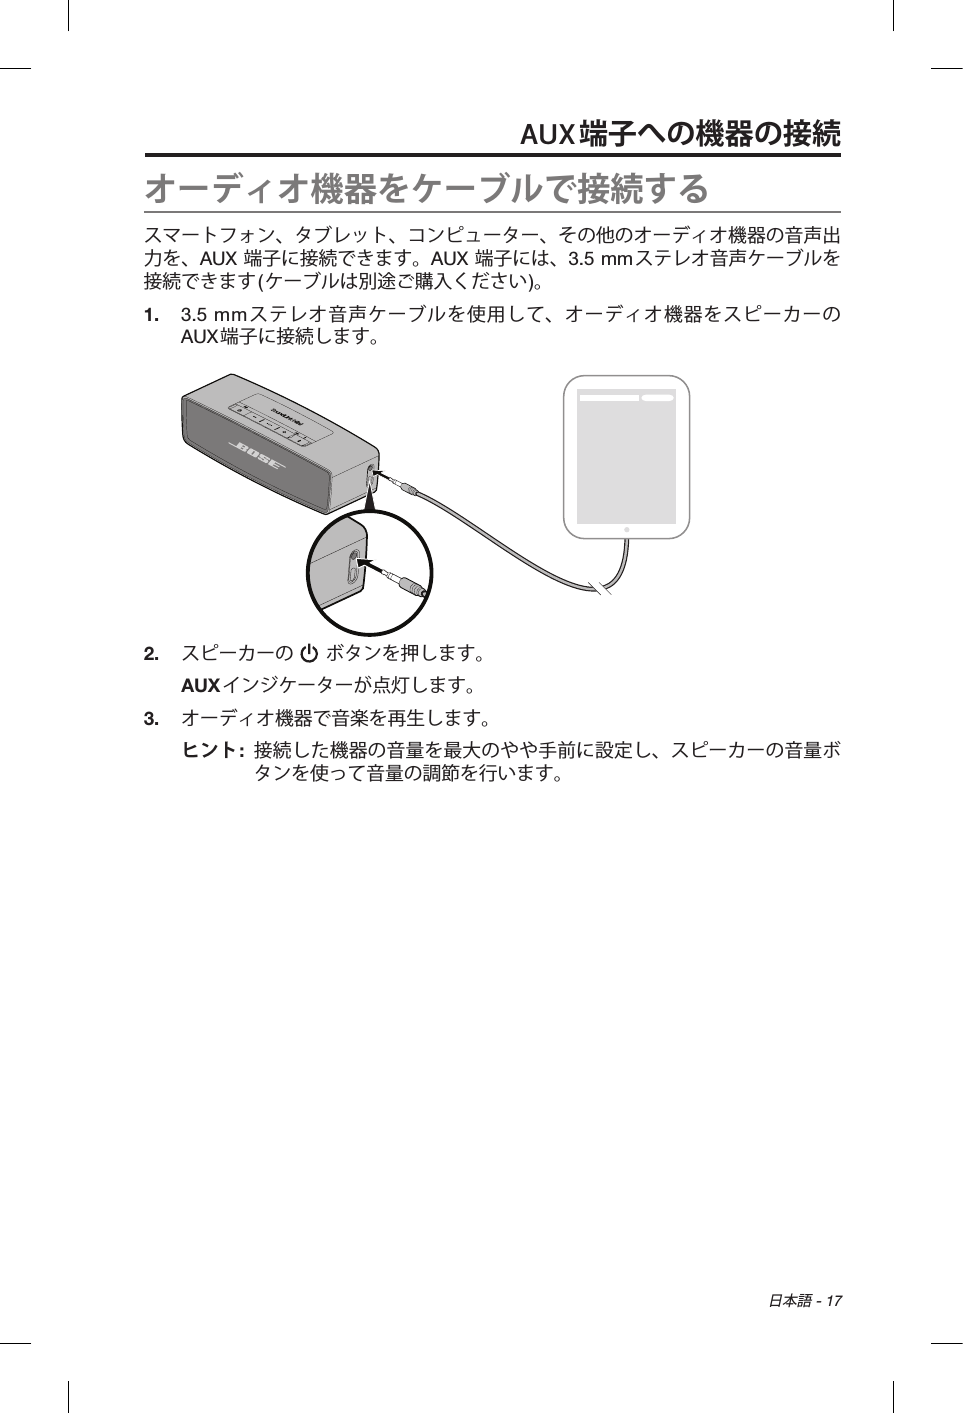  日本語 - 17AUX端子への機器の接続オーディオ機器をケーブルで接続するスマートフォン、タブレット、コンピューター、その他のオーディオ機器の音声出力を、AUX 端子に接続できます。AUX 端子には、3.5 mmステレオ音声ケーブルを接続できます(ケーブルは別途ご購入ください)。1.  3.5 mmステレオ音声ケーブルを使用して、オーディオ機器をスピーカーのAUX端子に接続します。2.  スピーカーの   ボタンを押します。AUXインジケーターが点灯します。3.  オーディオ機器で音楽を再生します。ヒント:   接続した機器の音量を最大のやや手前に設定し、スピーカーの音量ボタンを使って音量の調節を行います。